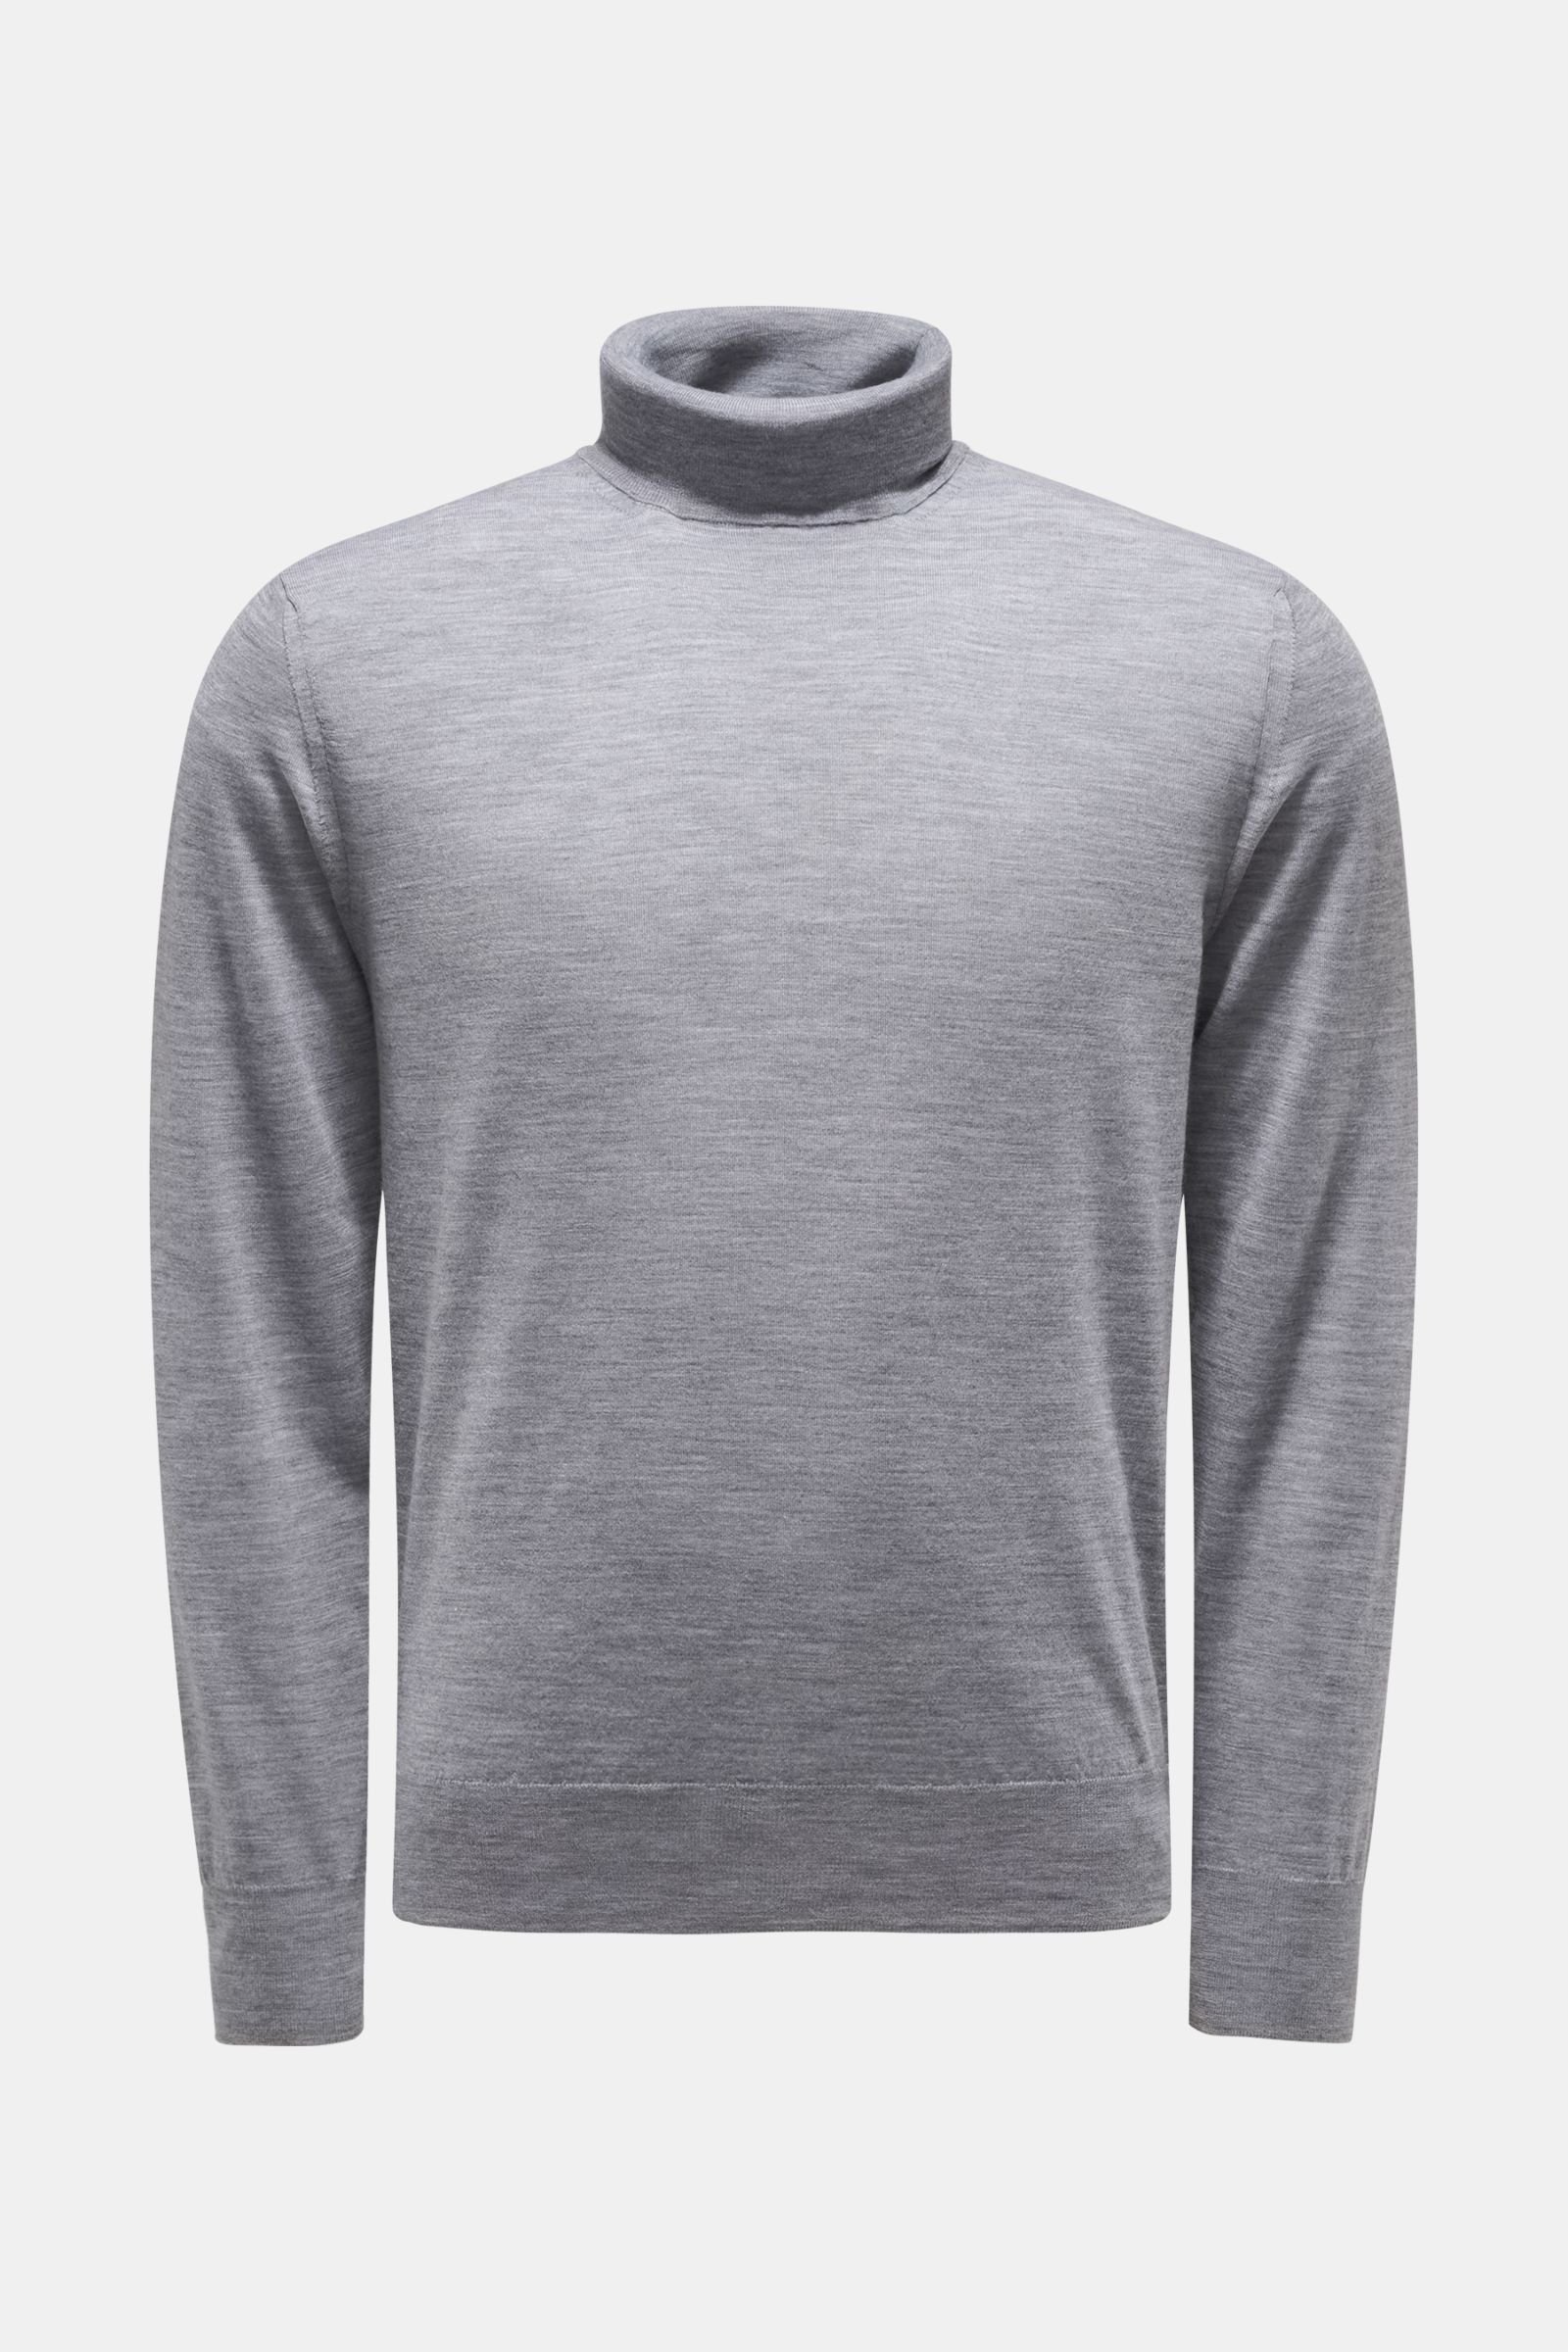 Fine knit-turtleneck jumper grey